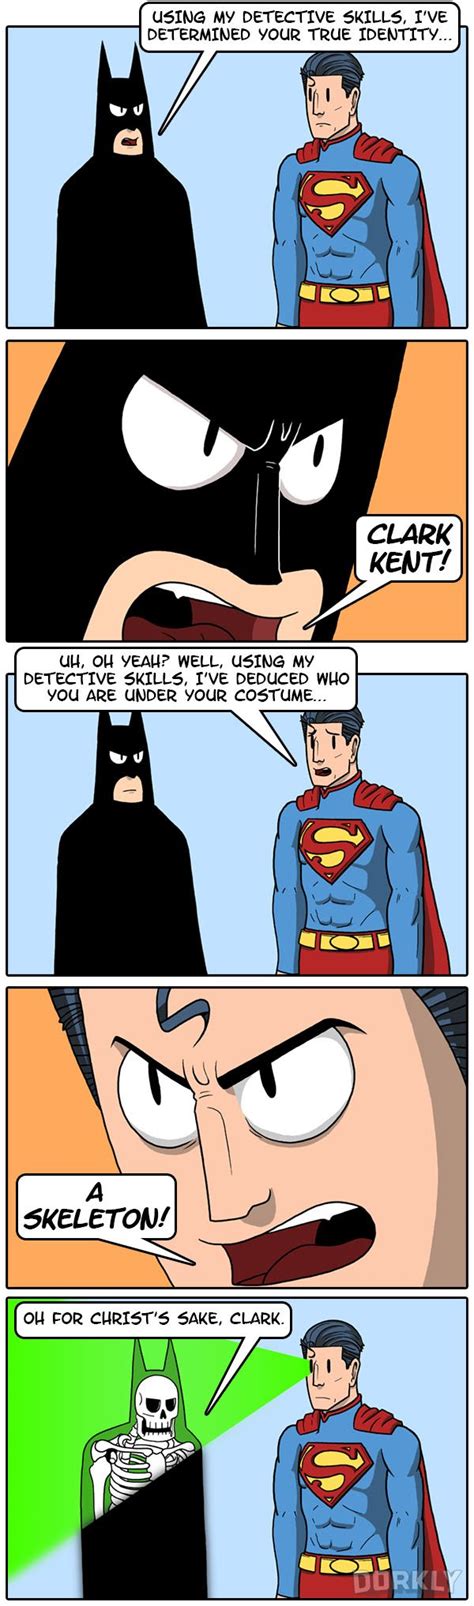 Dorkly Reveals Batmans True Identity In Hilarious Comic